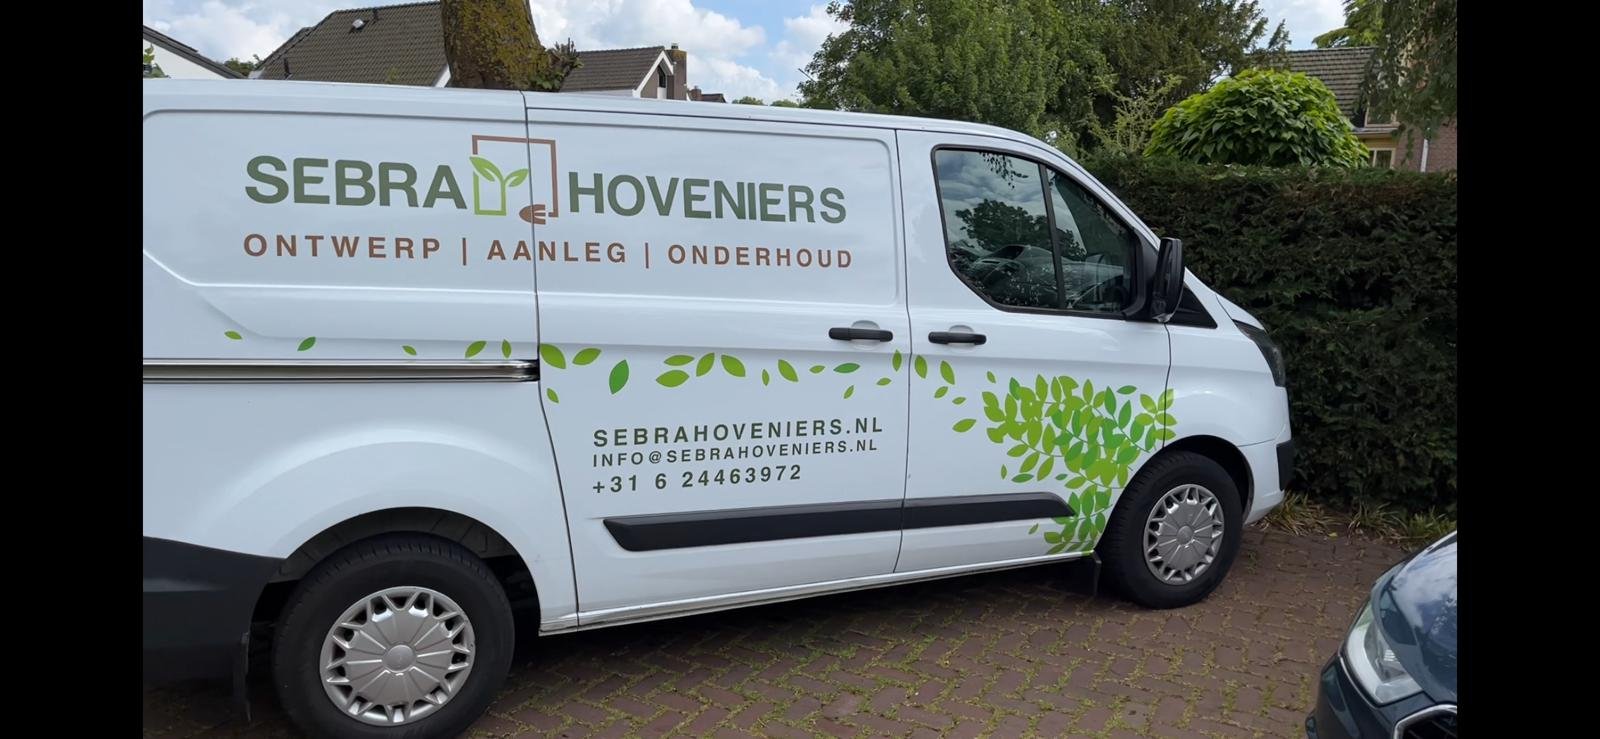 Jouw betrouwbare partner voor tuinontwerp, aanleg en onderhoud in de regio Noord-Holland!